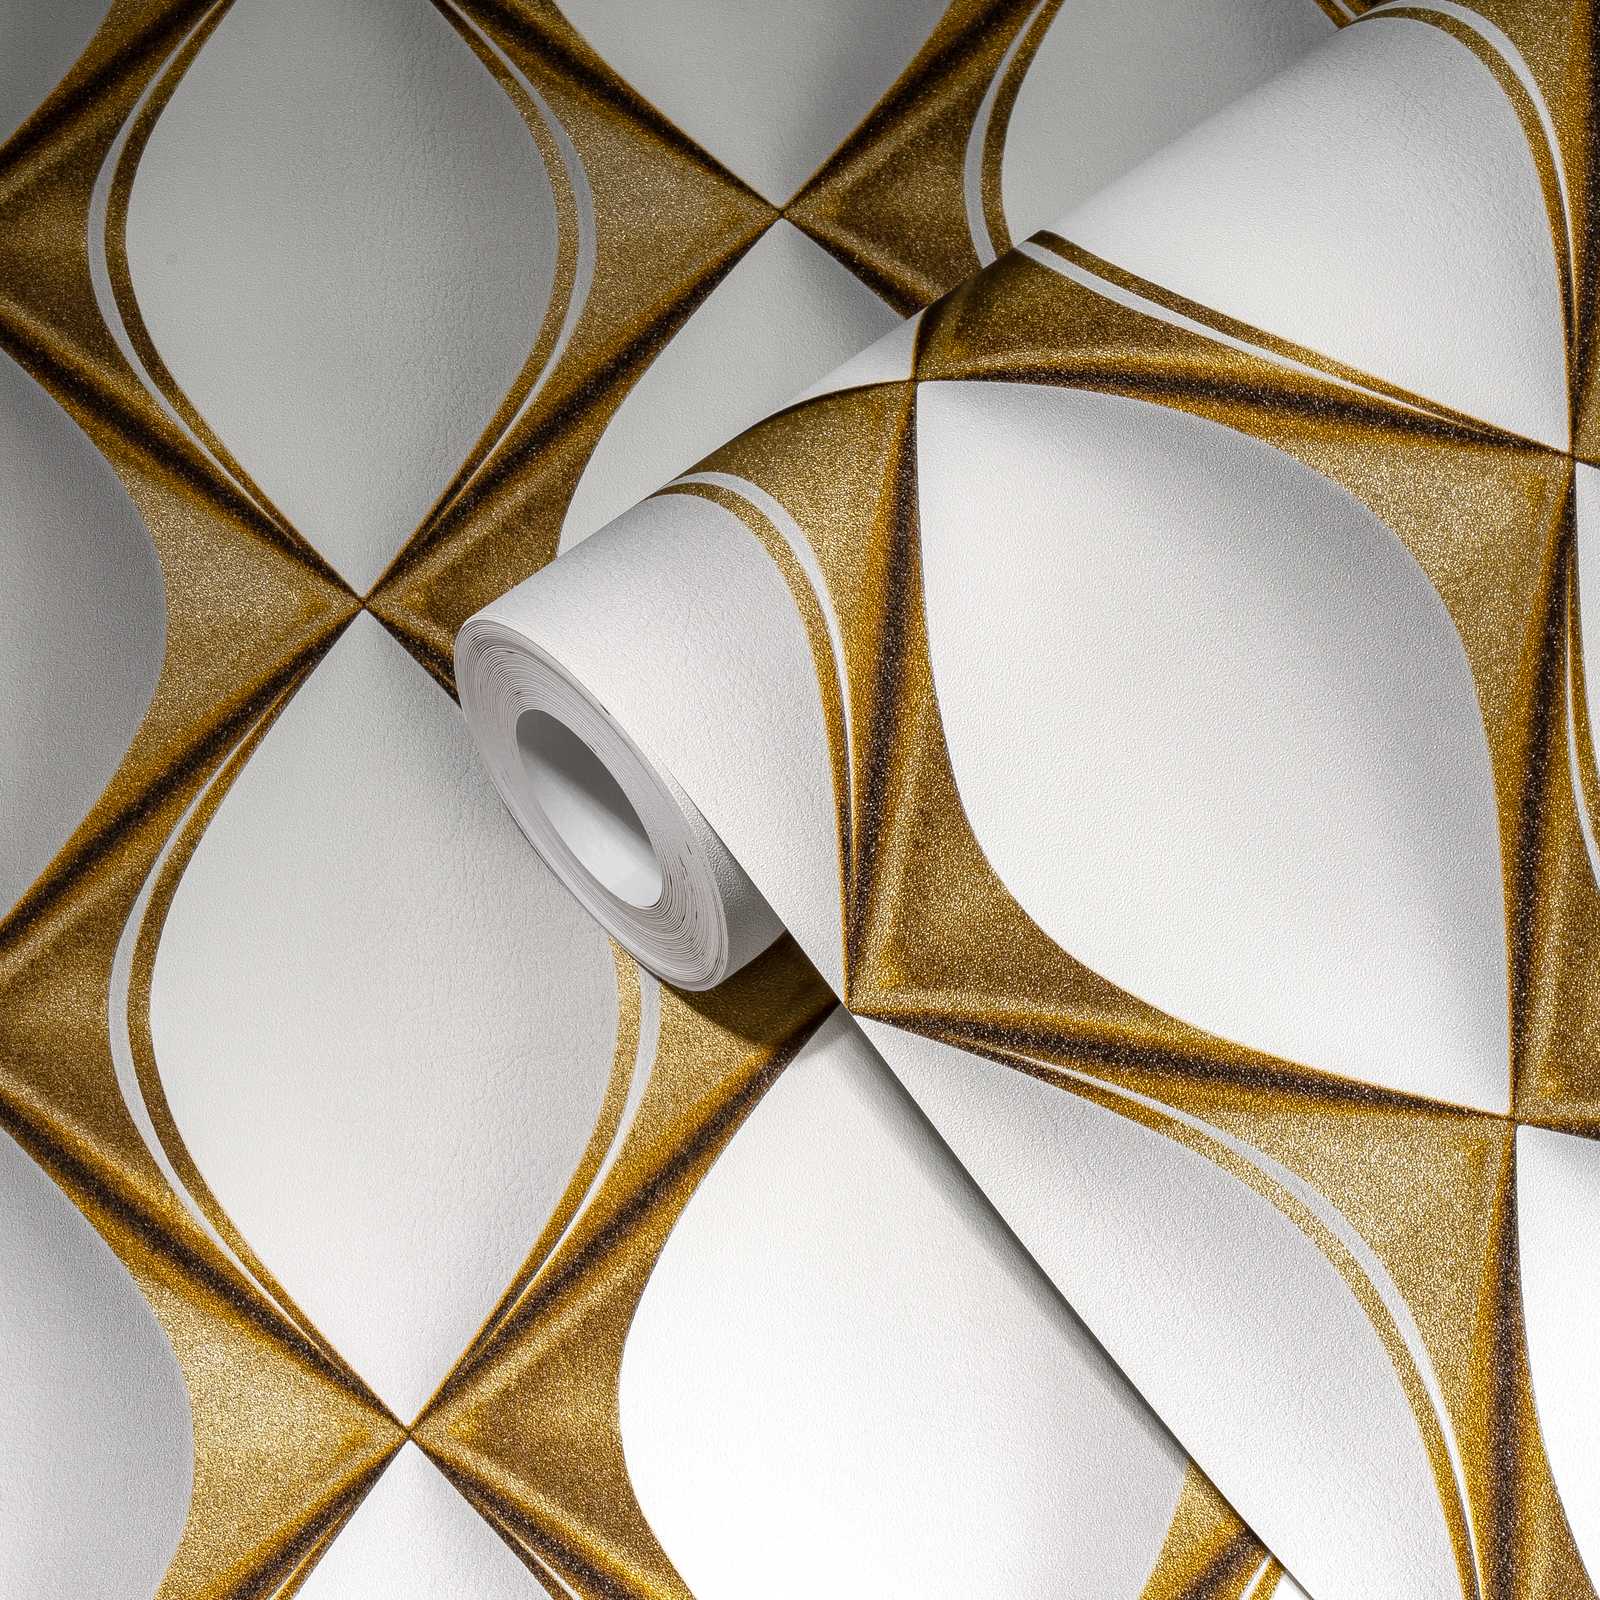             Papier peint 3D motif rétro doré - blanc, gris, métallique
        